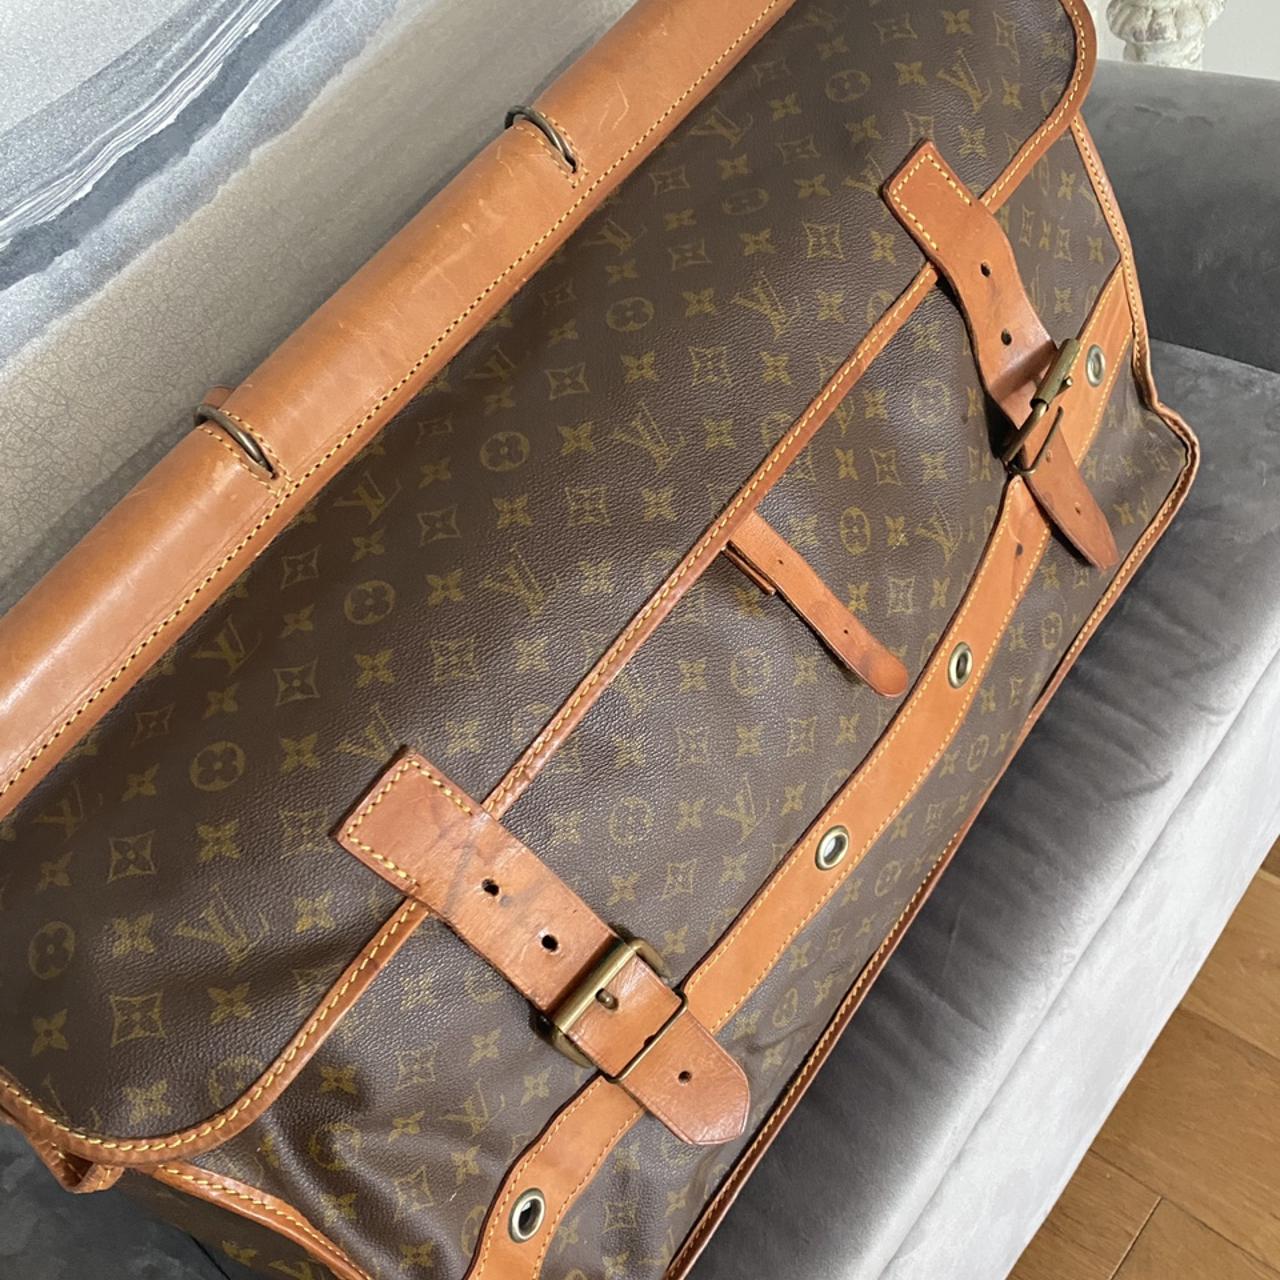 Louis Vuitton rolling luggage ( 2 wheels) - huge - Depop